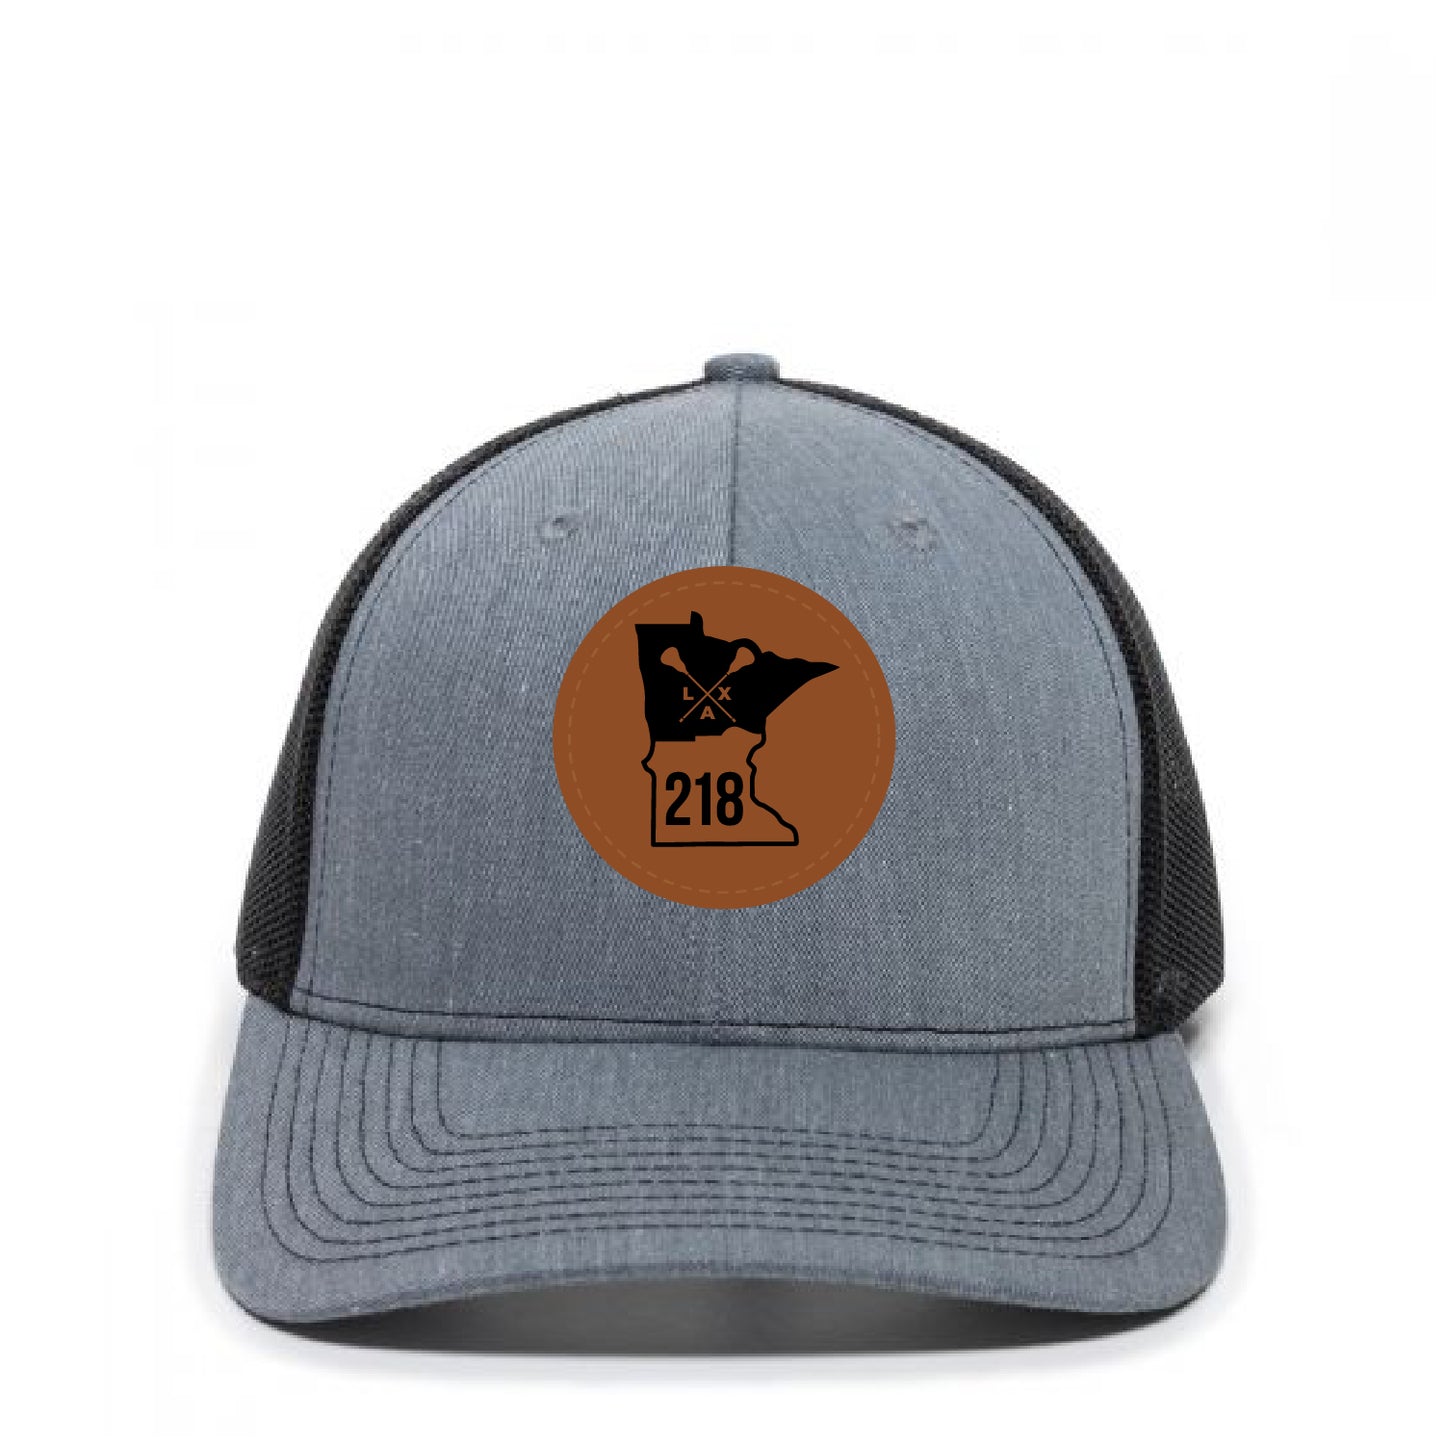 218 Lax Trucker Hat